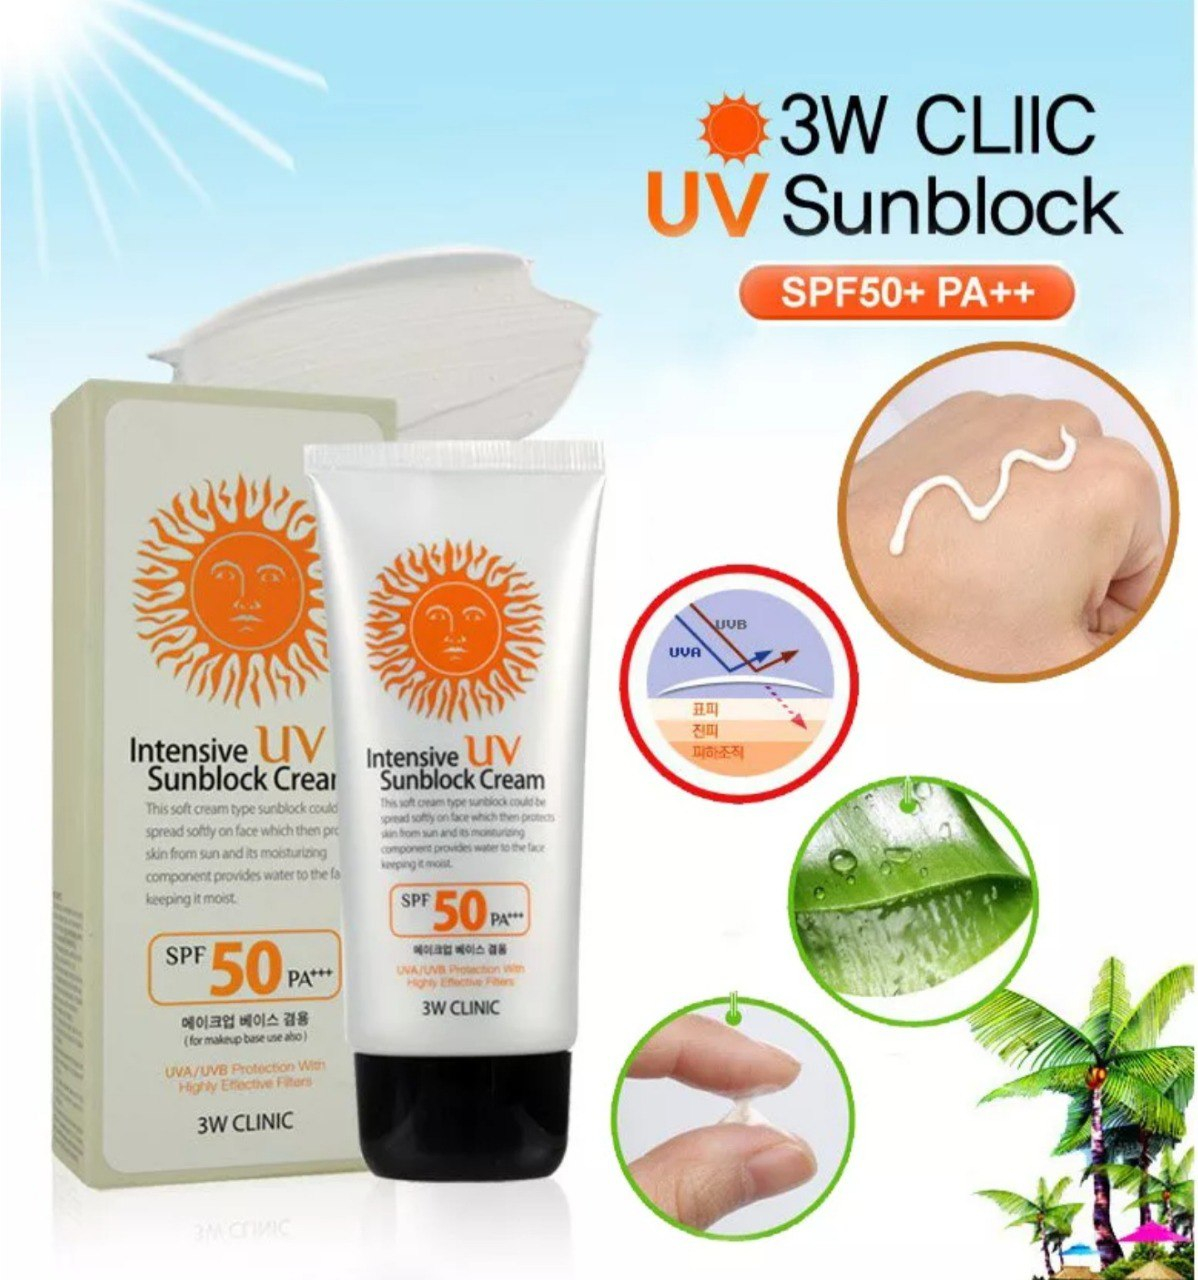 Sun block крем. 3w Clinic солнцезащитный крем. 3w Clinic солнцезащитный крем Intensive UV Sunblock spf50+. 3w Clinic Intensive UV Sunblock Cream. 3w Clinic солнцезащитный крем / Intensive UV Sun Block Cream, 70 мл.